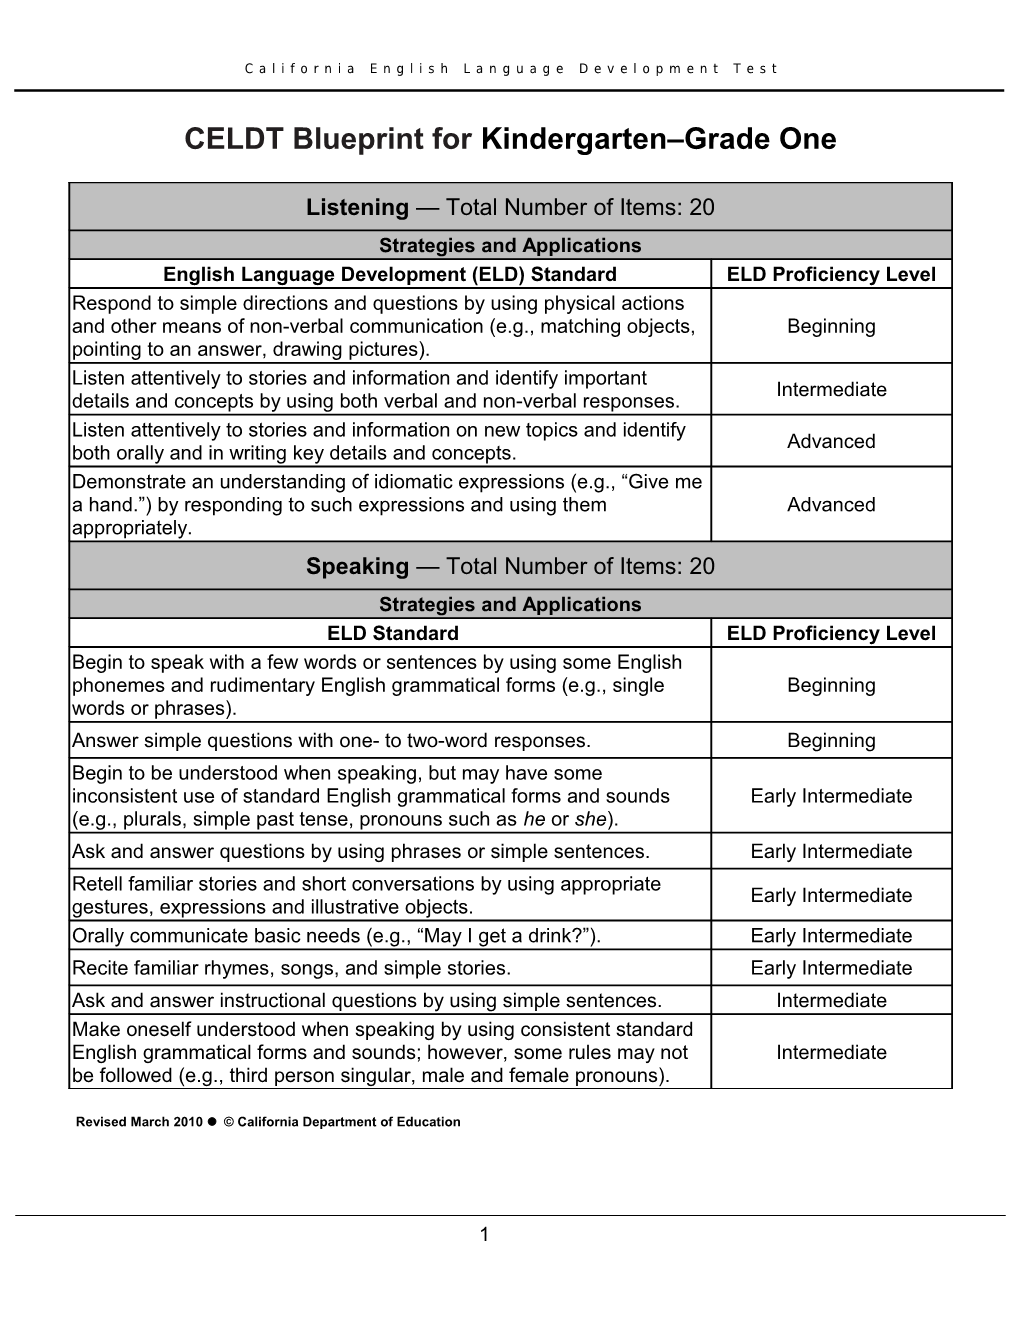 2010 CELDT Test Blueprint, Grade One - CELDT (CA Dept of Education)